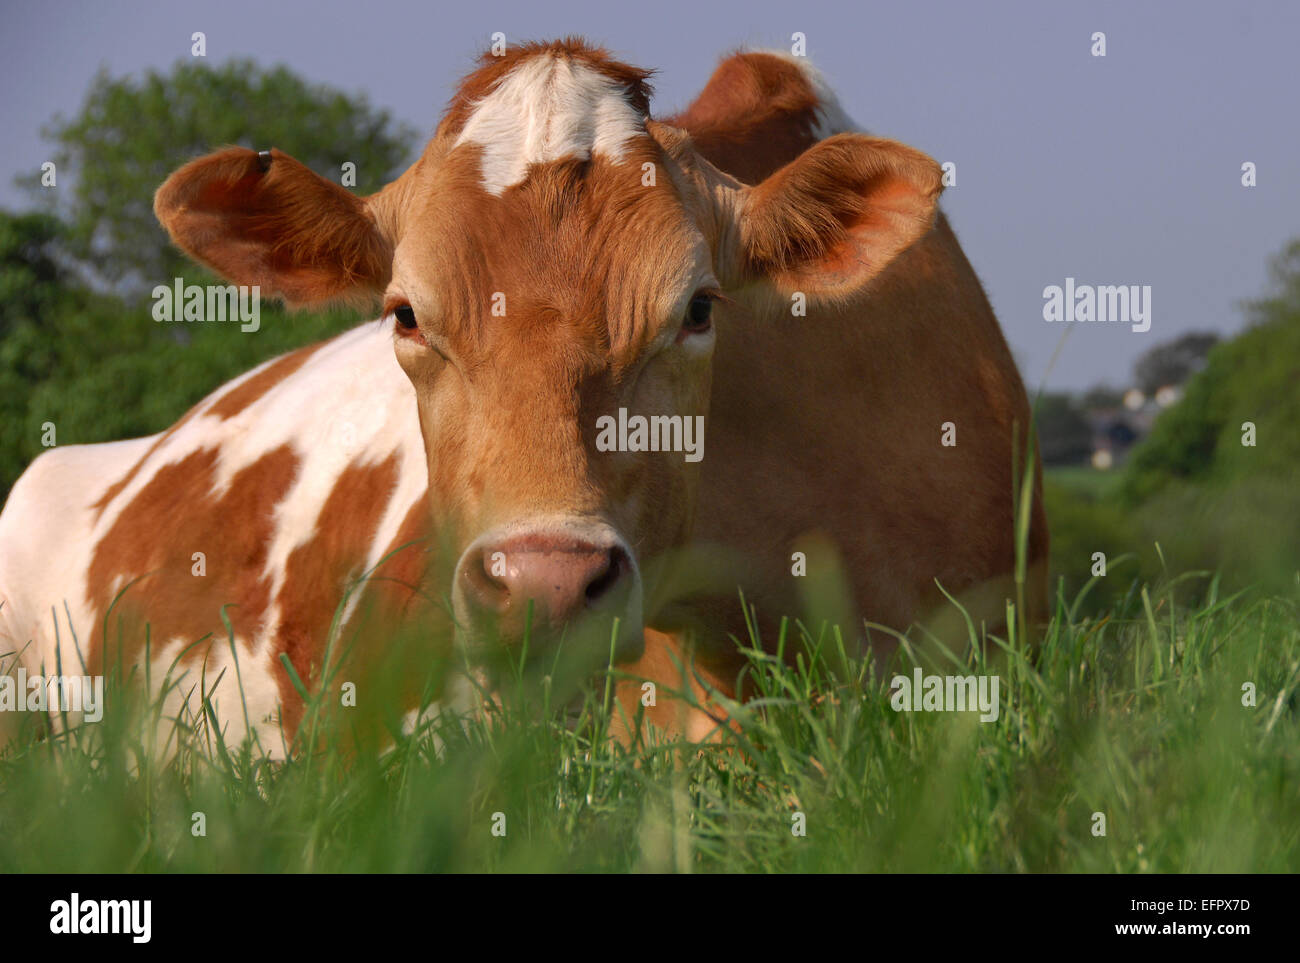 Guernsey Kühe liegen auf einer Weide reichen Rasen auf einem Bauernhof in North Devon, UK. Vor allem für ihre reiche cremige milk.a UK Molkerei gehalten Stockfoto